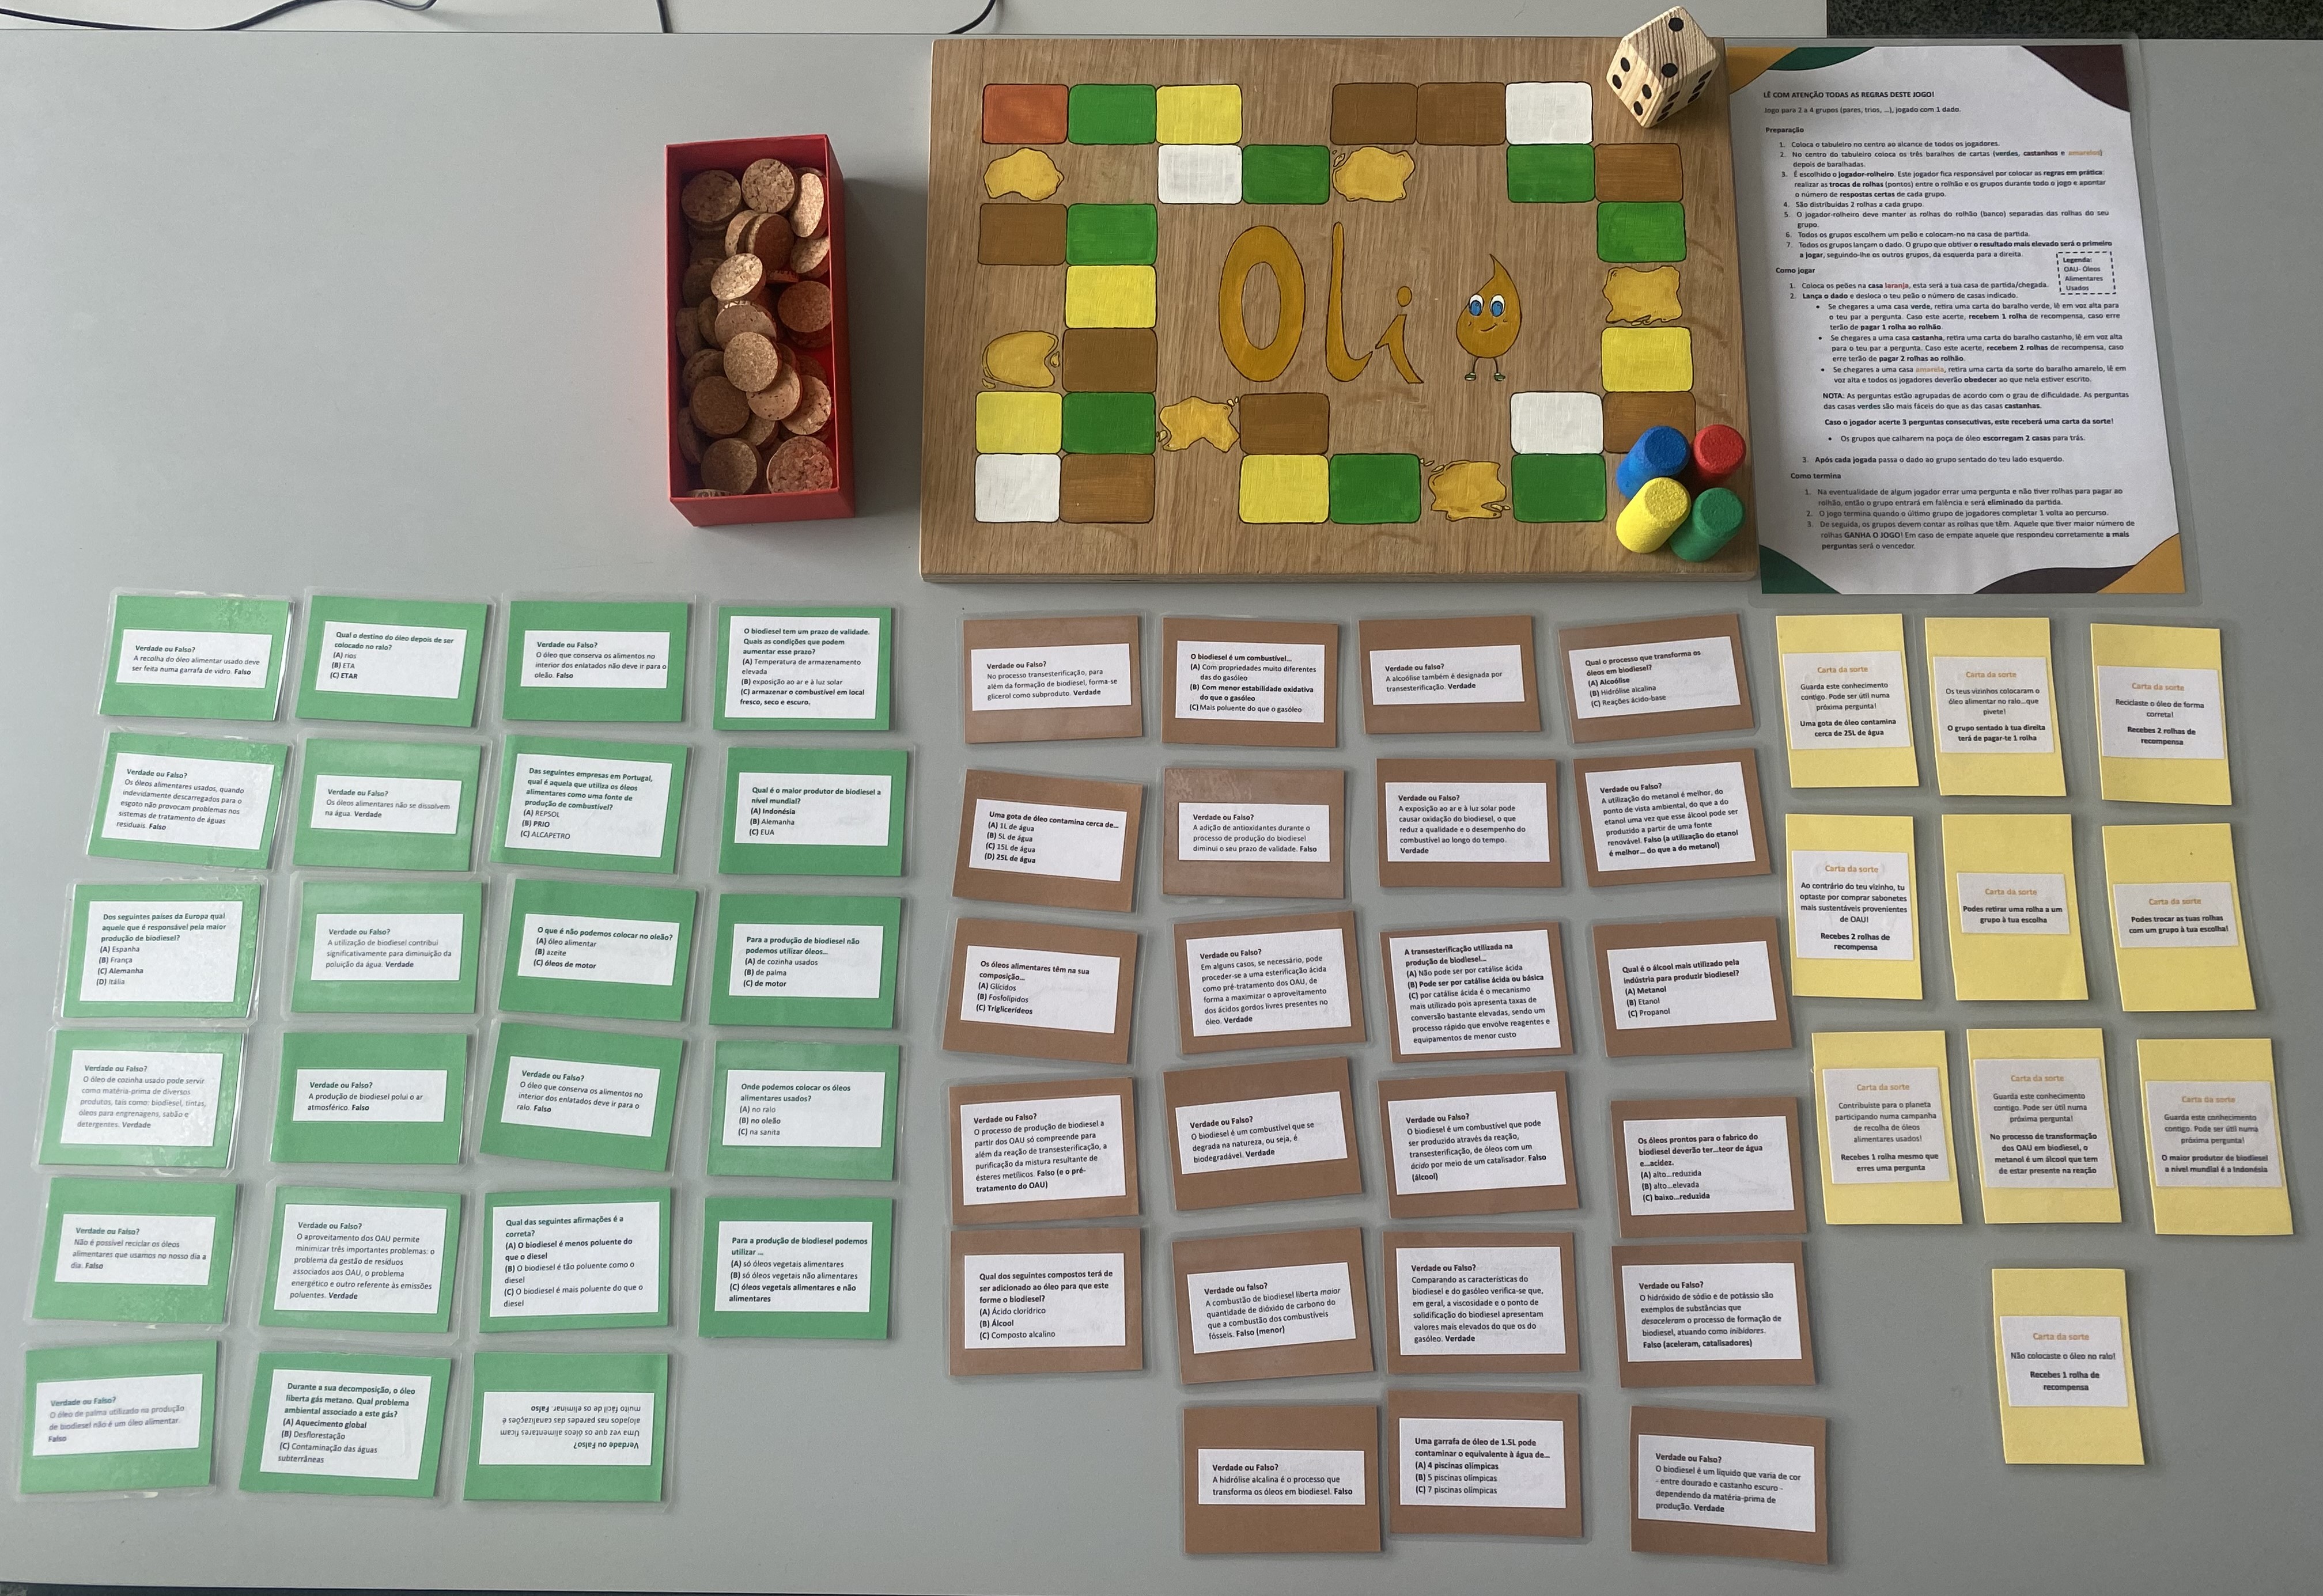 Todos os elementos do jogo- Tabuleiro, dado, peões, rolhões (pontos)  e cartas (perguntas)-verdes, castanhas e cartas da sorte (amarelas) e regras.